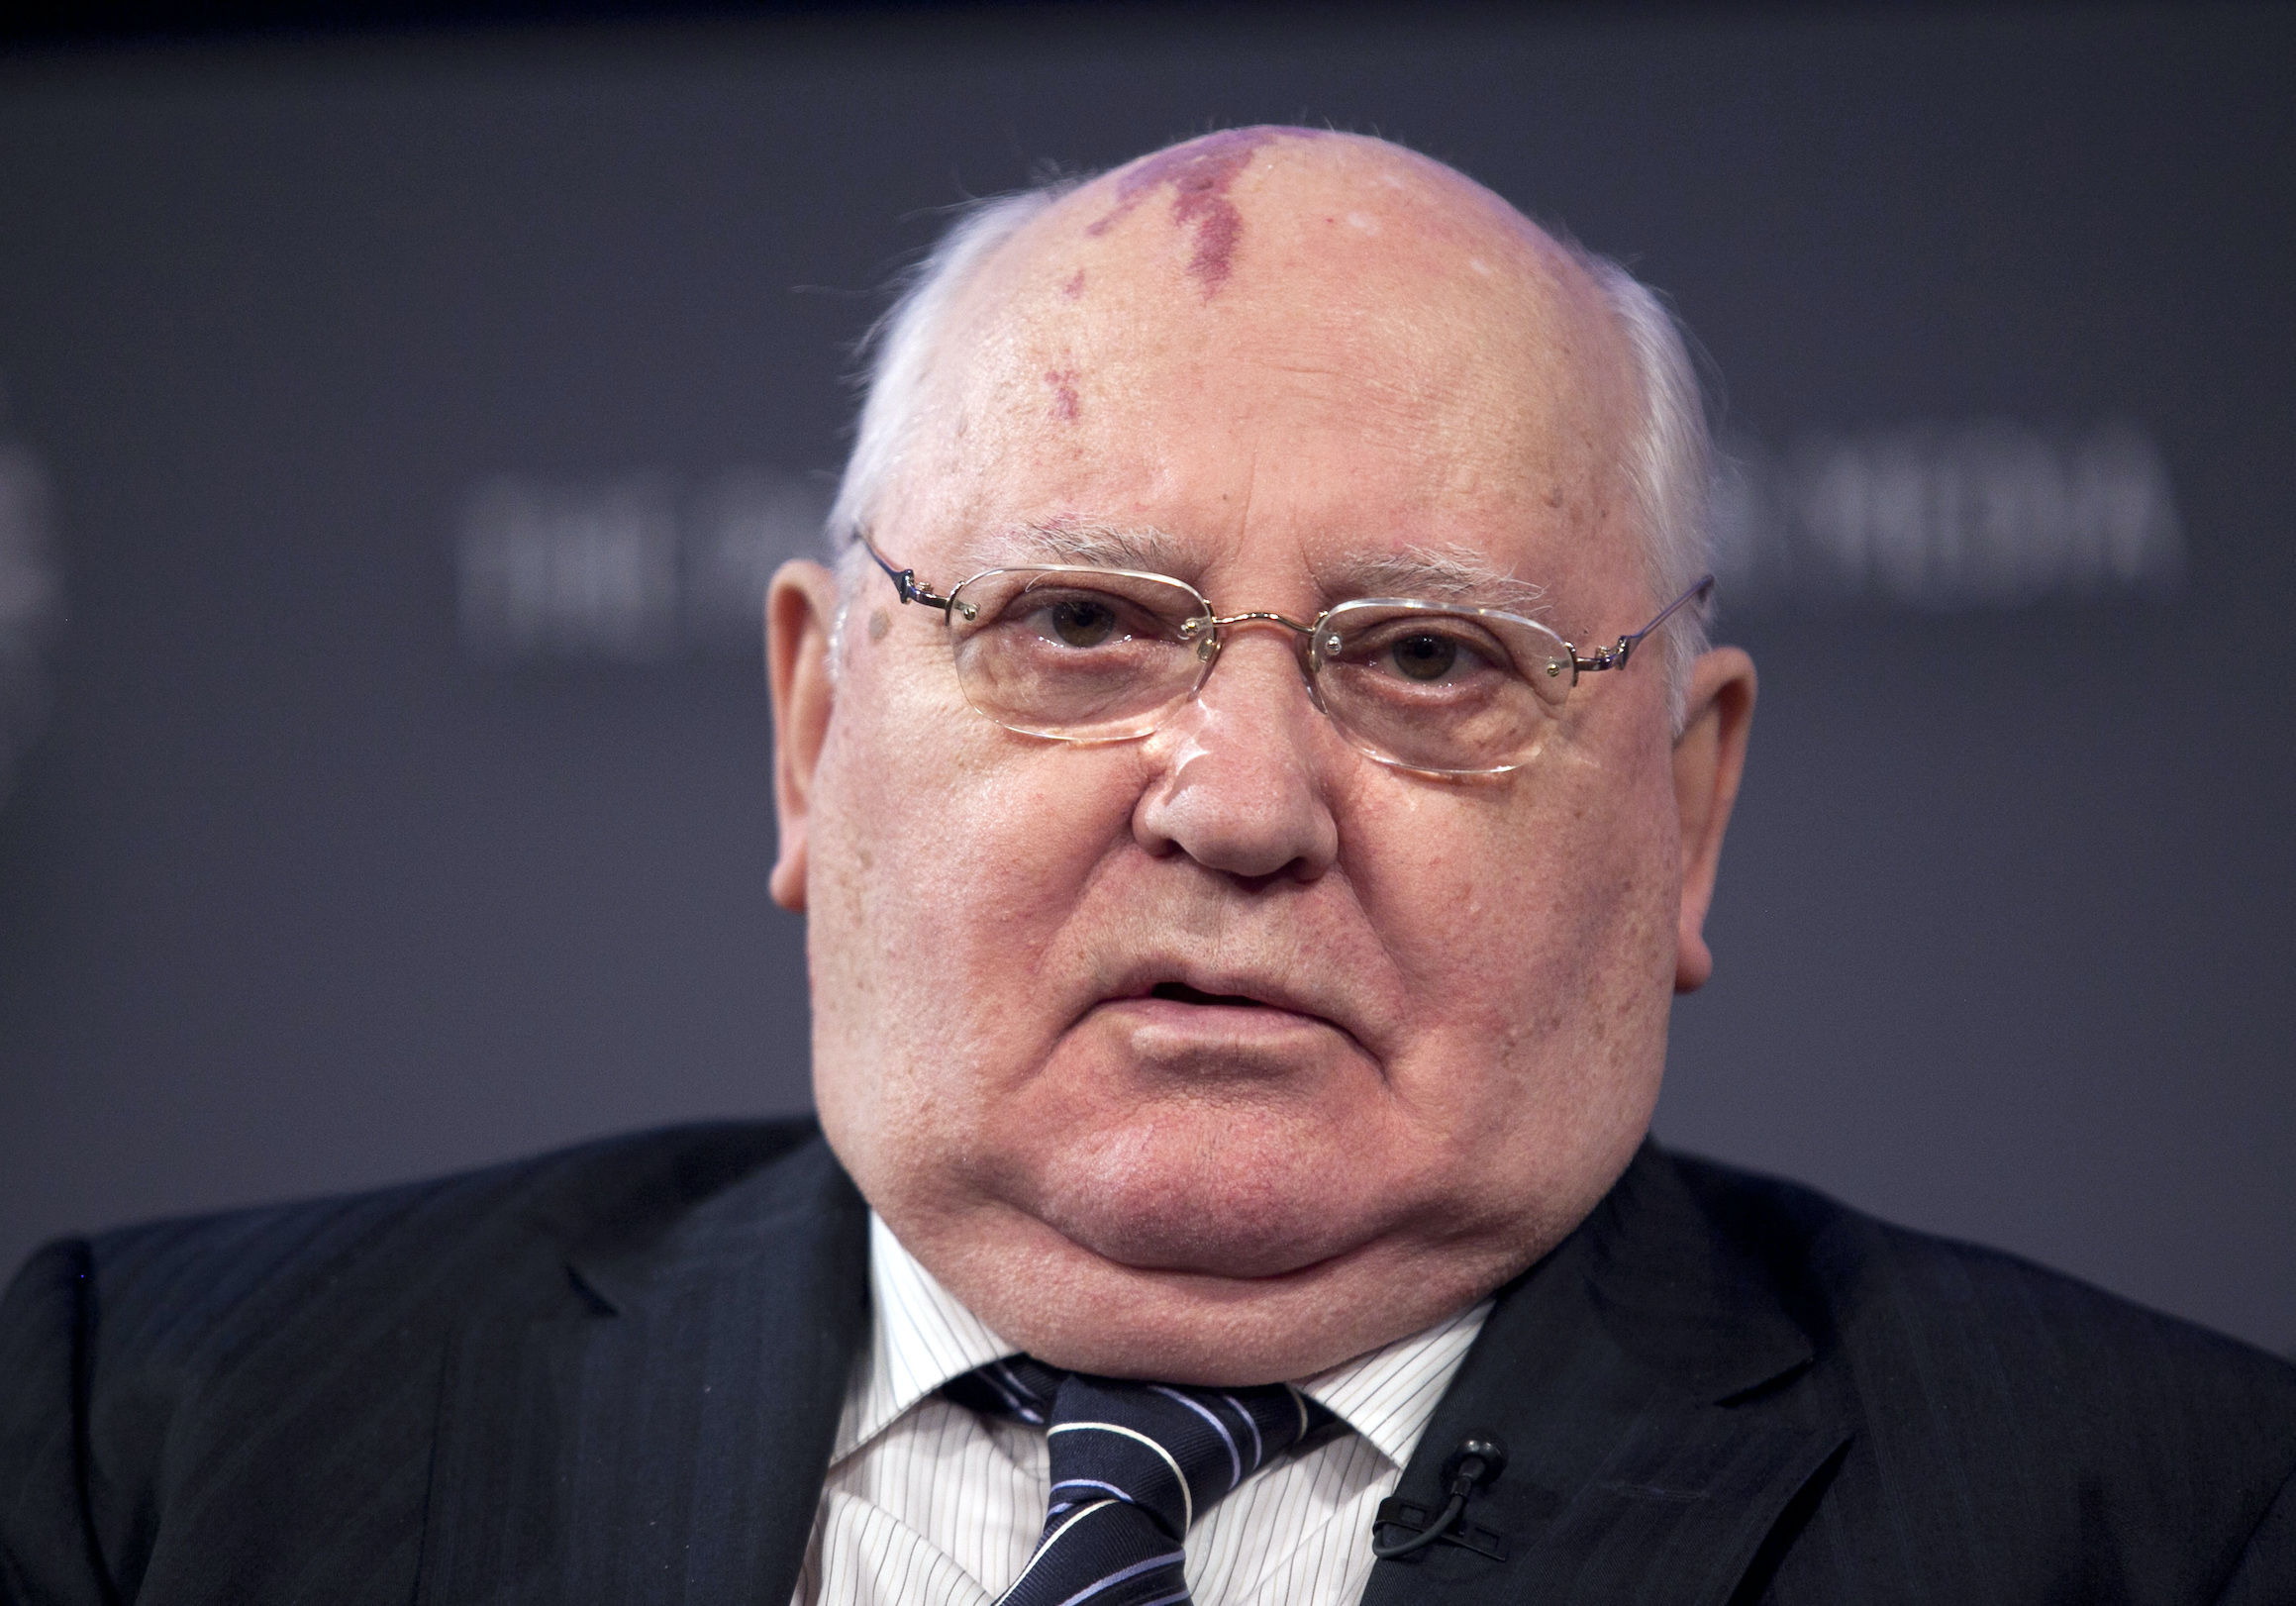 Morreu Mikhail Gorbachev, ex-líder da União Soviética, aos 91 anos